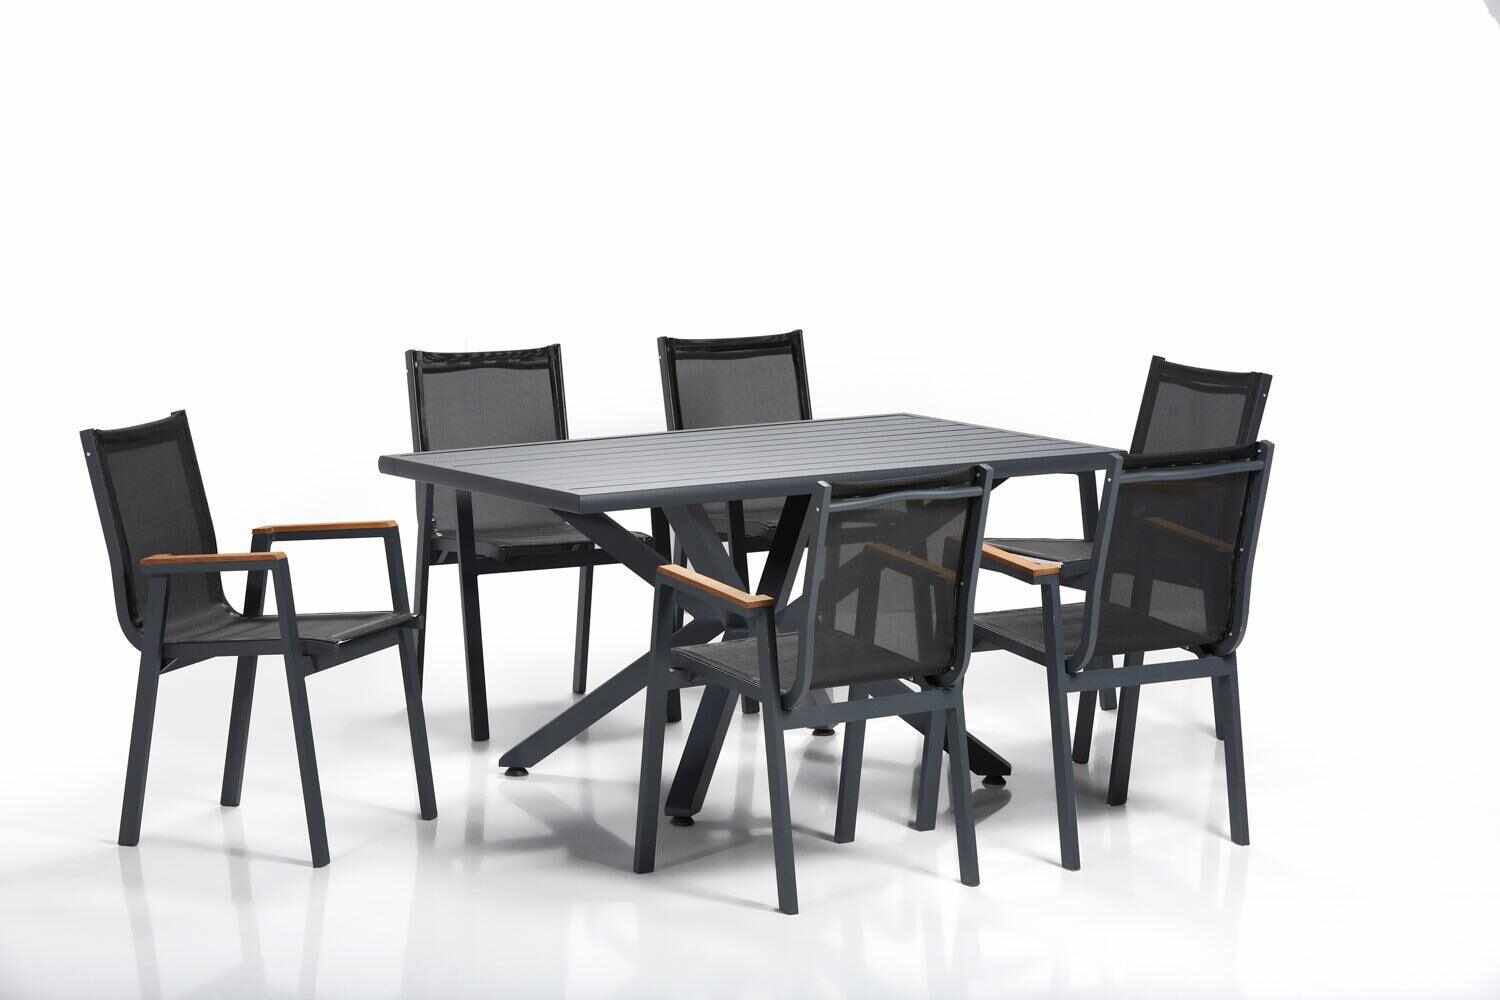 Set masă și scaune (7 bucăți), Gri, 150x63x90 cm